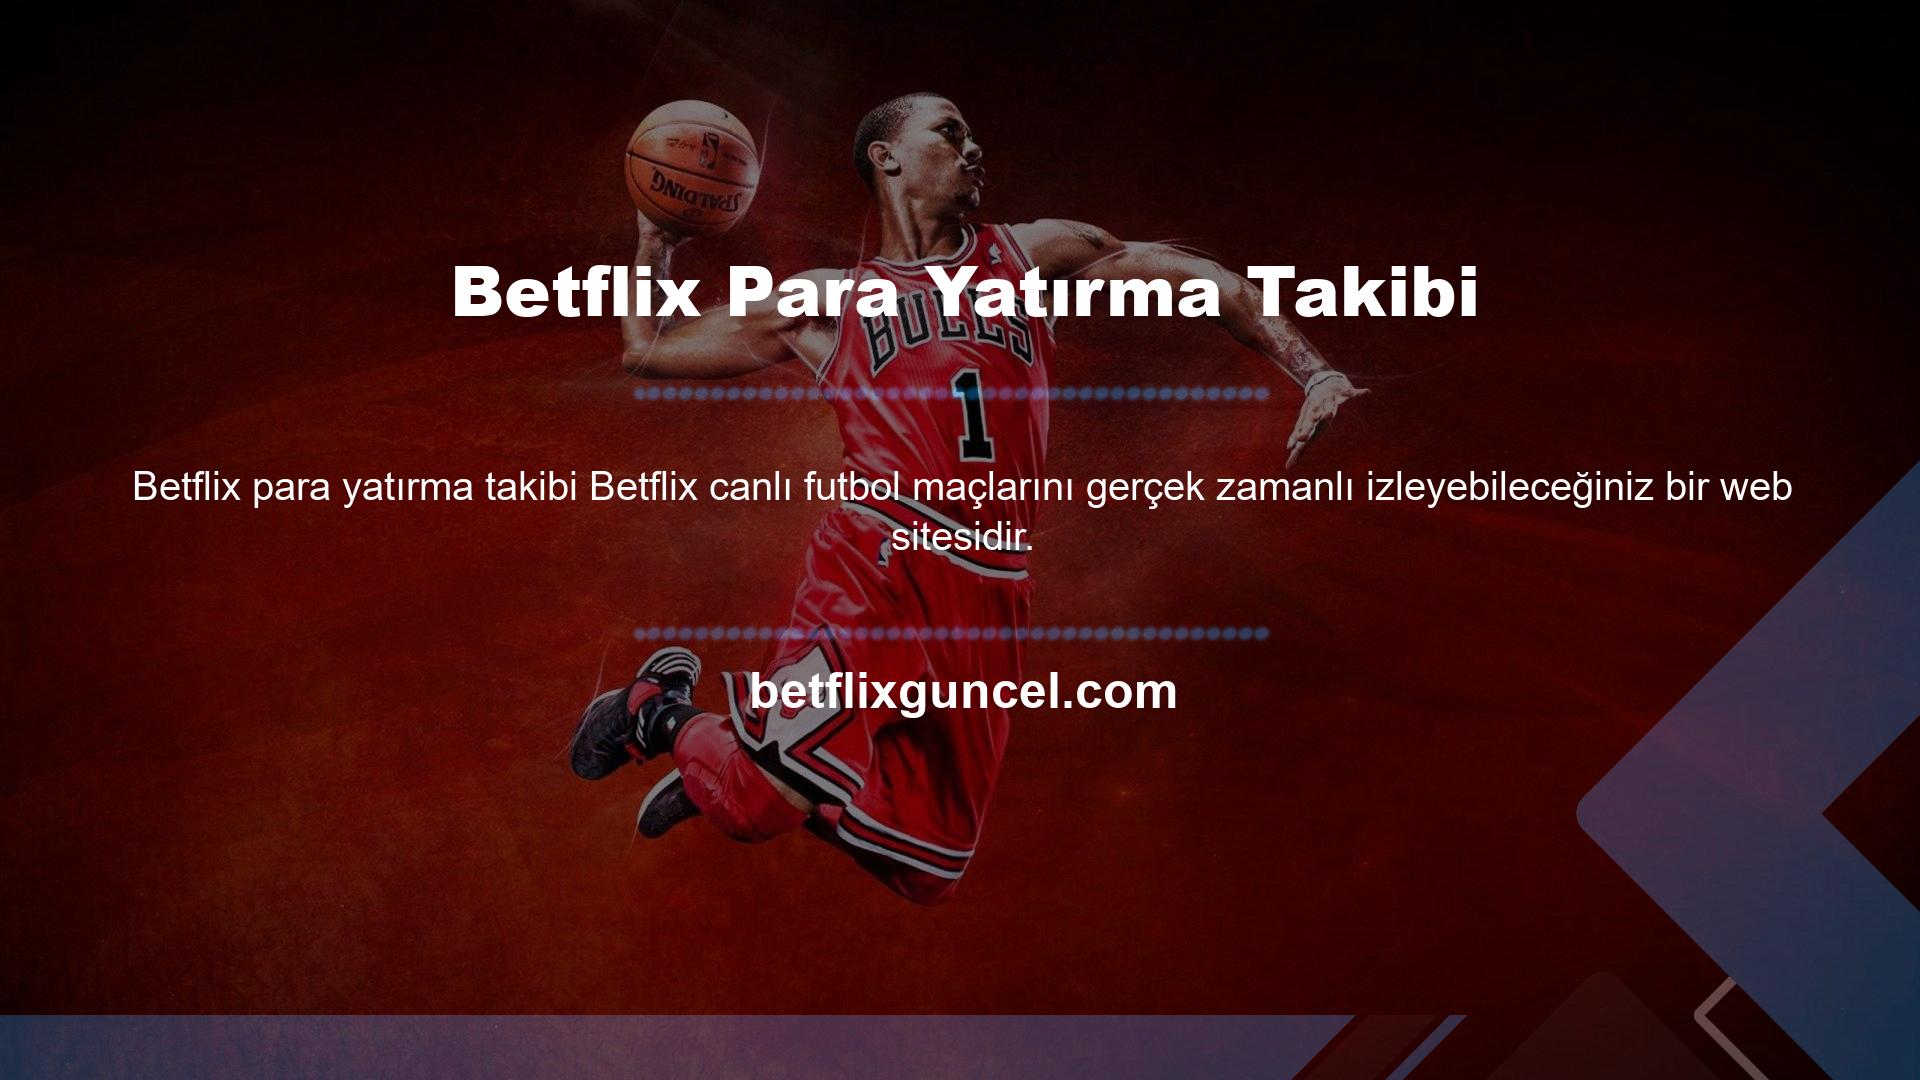 Betflix Futbol, ​​kullanıcılara farklı ülkelerin lig maçlarını izleme olanağı sunarak farklı bir futbol deneyimi yaşatıyor